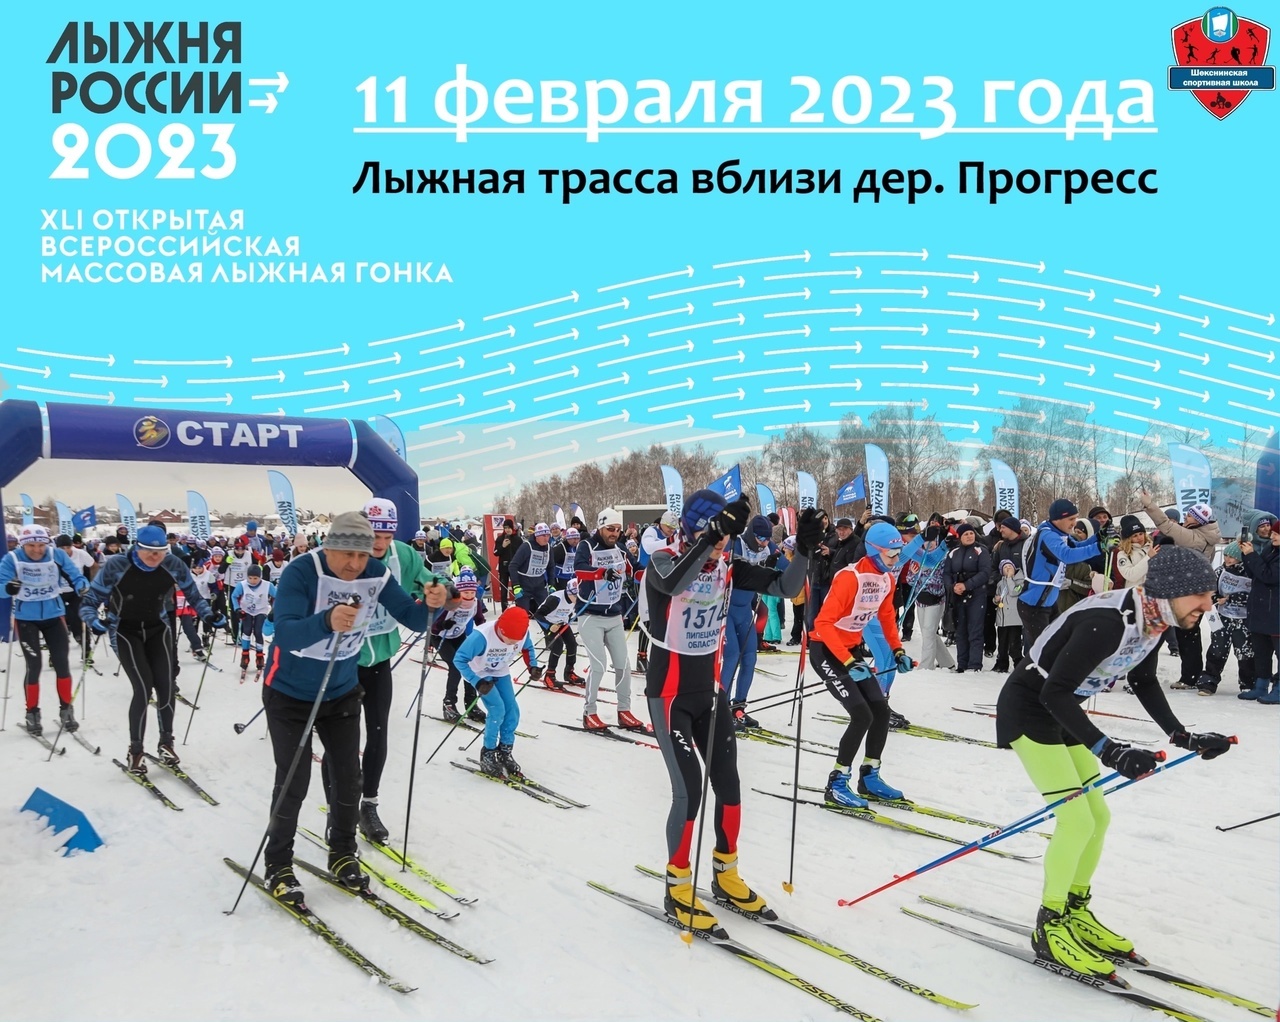 Массовая лыжная гонка &amp;quot;Лыжня России - 2023&amp;quot;.